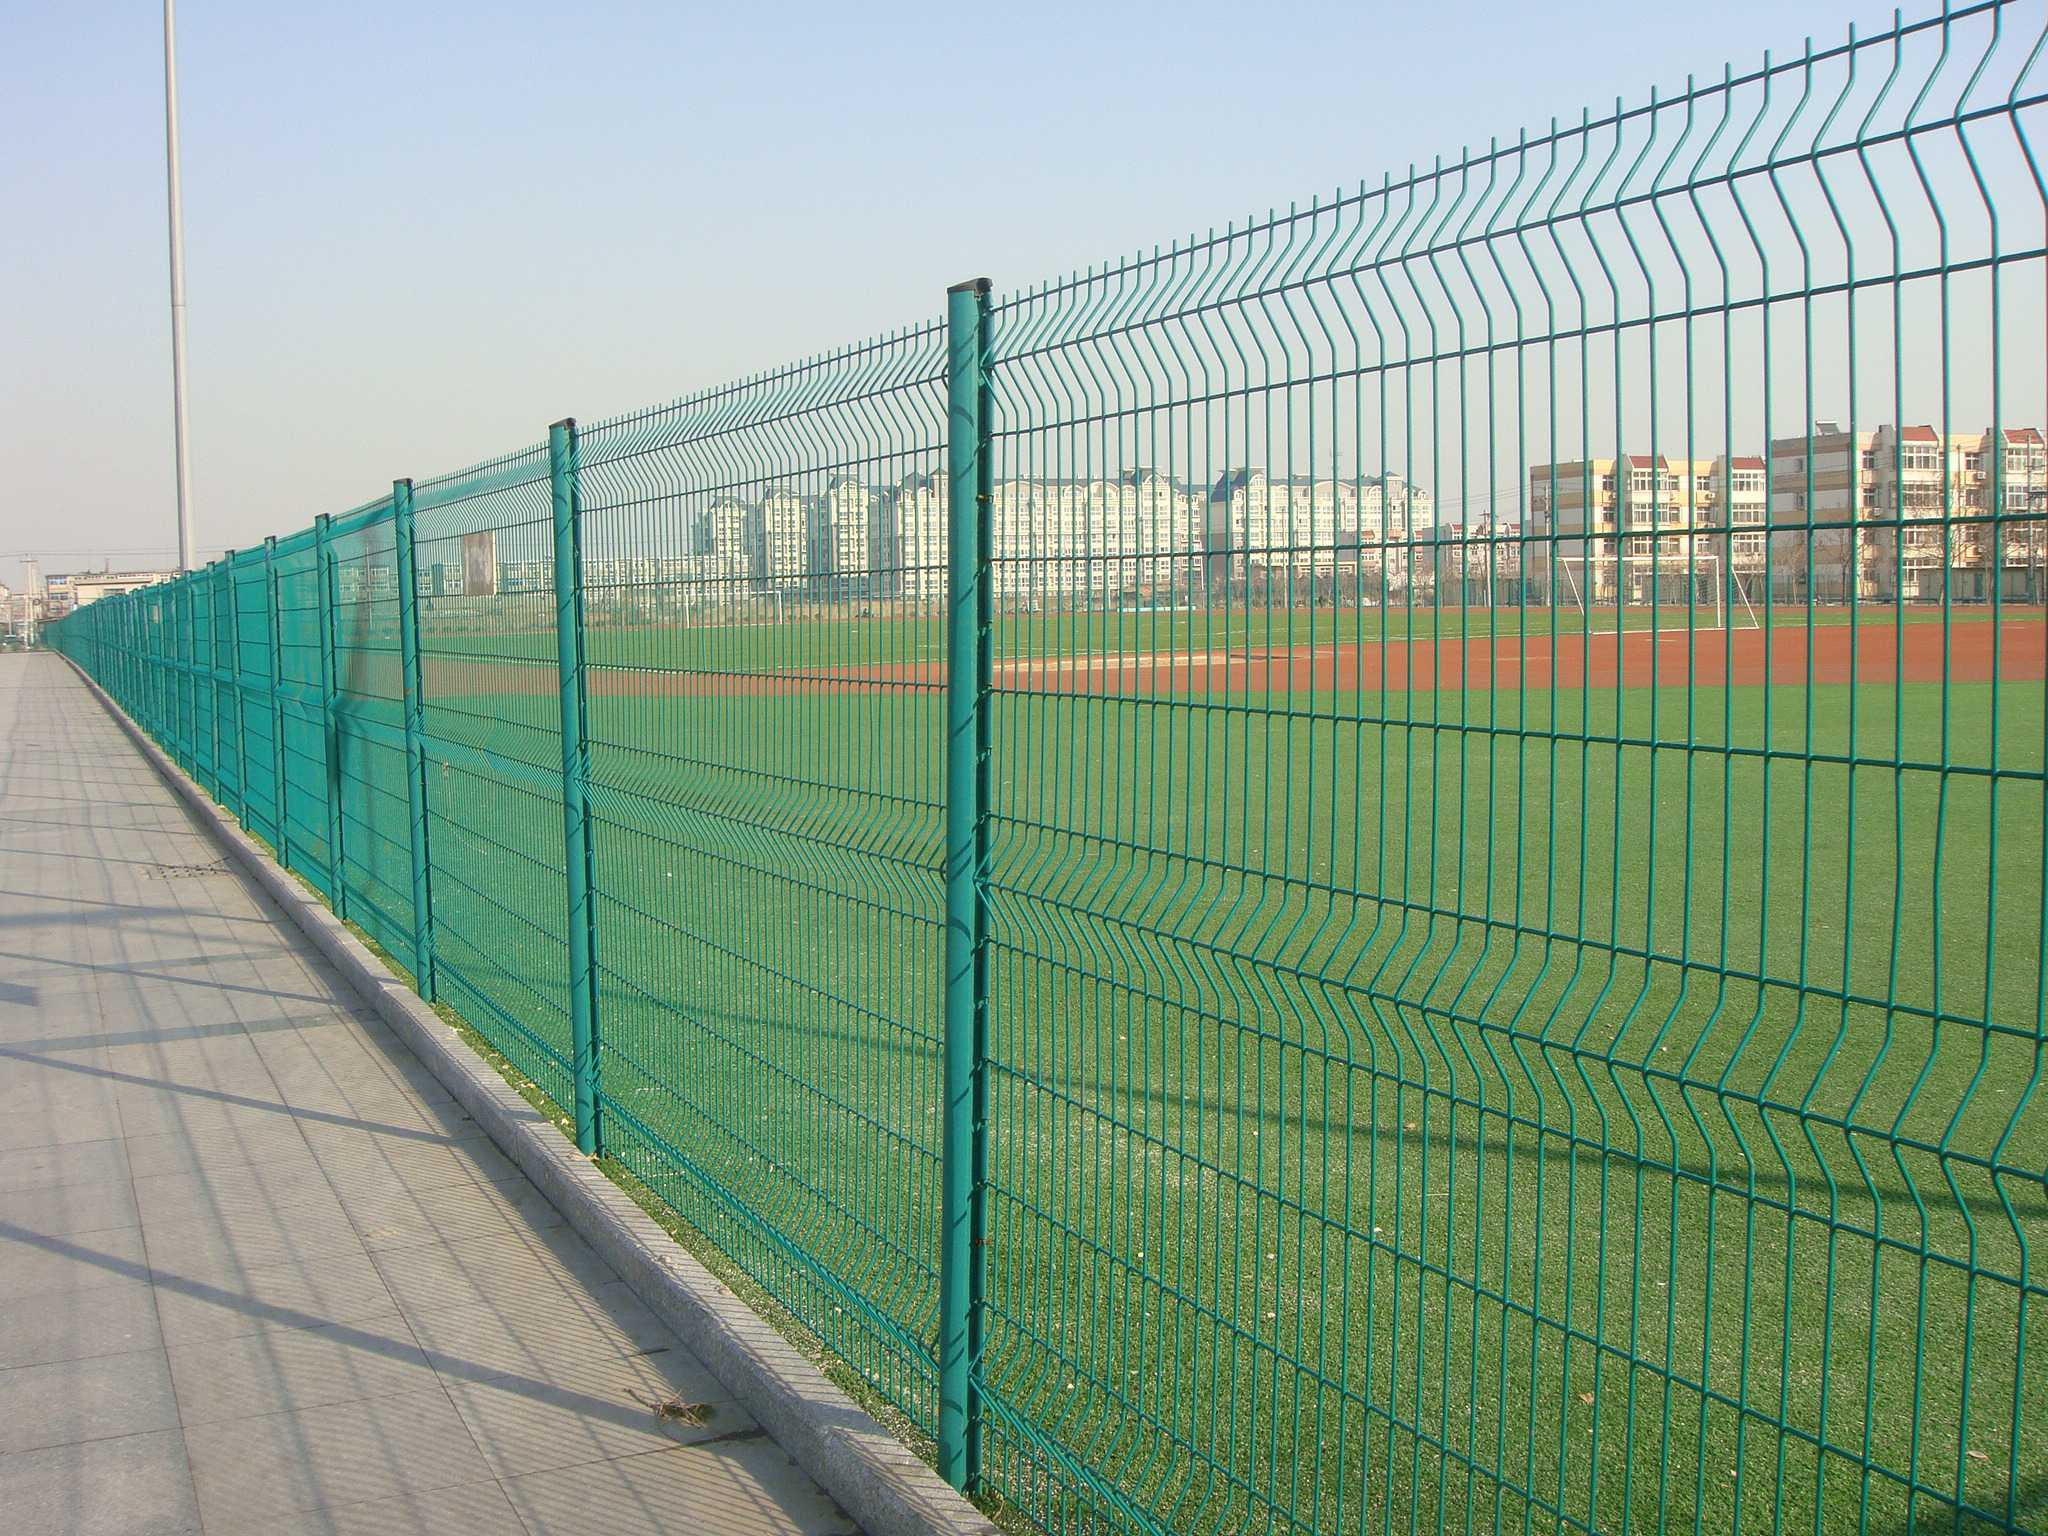 Hàng rào lưới thép hàn 2024: Hàng rào lưới thép hàn là một trong những loại hàng rào được ưa chuộng nhất hiện nay. Với độ bền và tính năng an toàn cao, hàng rào này đã được sử dụng rộng rãi trong nhiều lĩnh vực như khu công nghiệp, sân vườn, nhà máy và trường học. Nếu bạn đang tìm kiếm những hình ảnh về hàng rào lưới thép hàn 2024, đừng ngần ngại để khám phá các sản phẩm mới nhất trên thị trường.